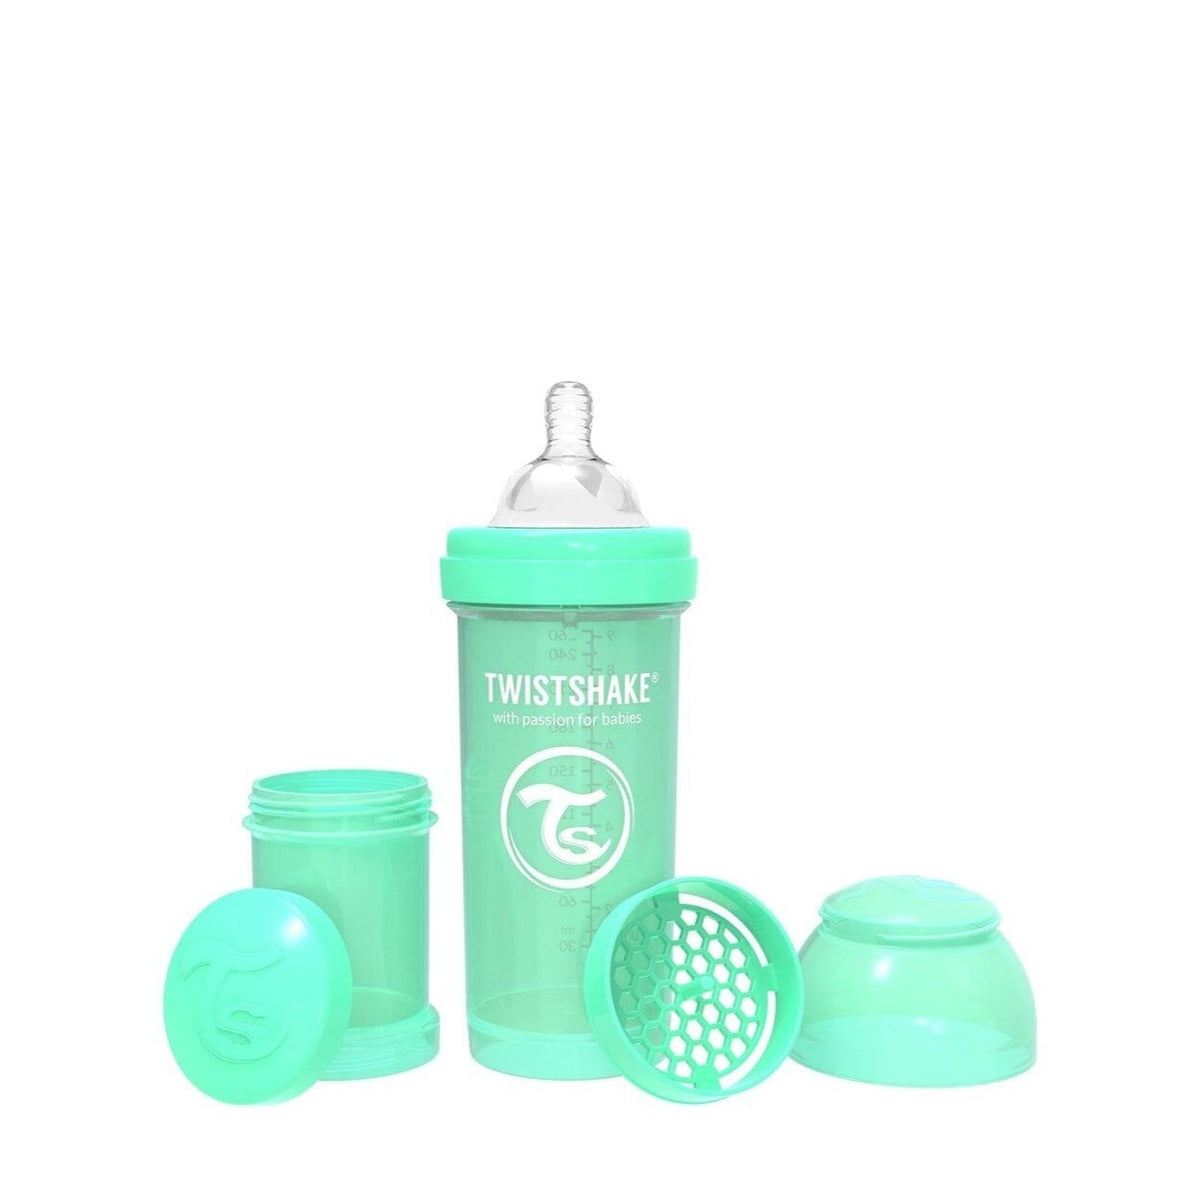 Anti-Colic Baby Bottle 260ml Twistshake